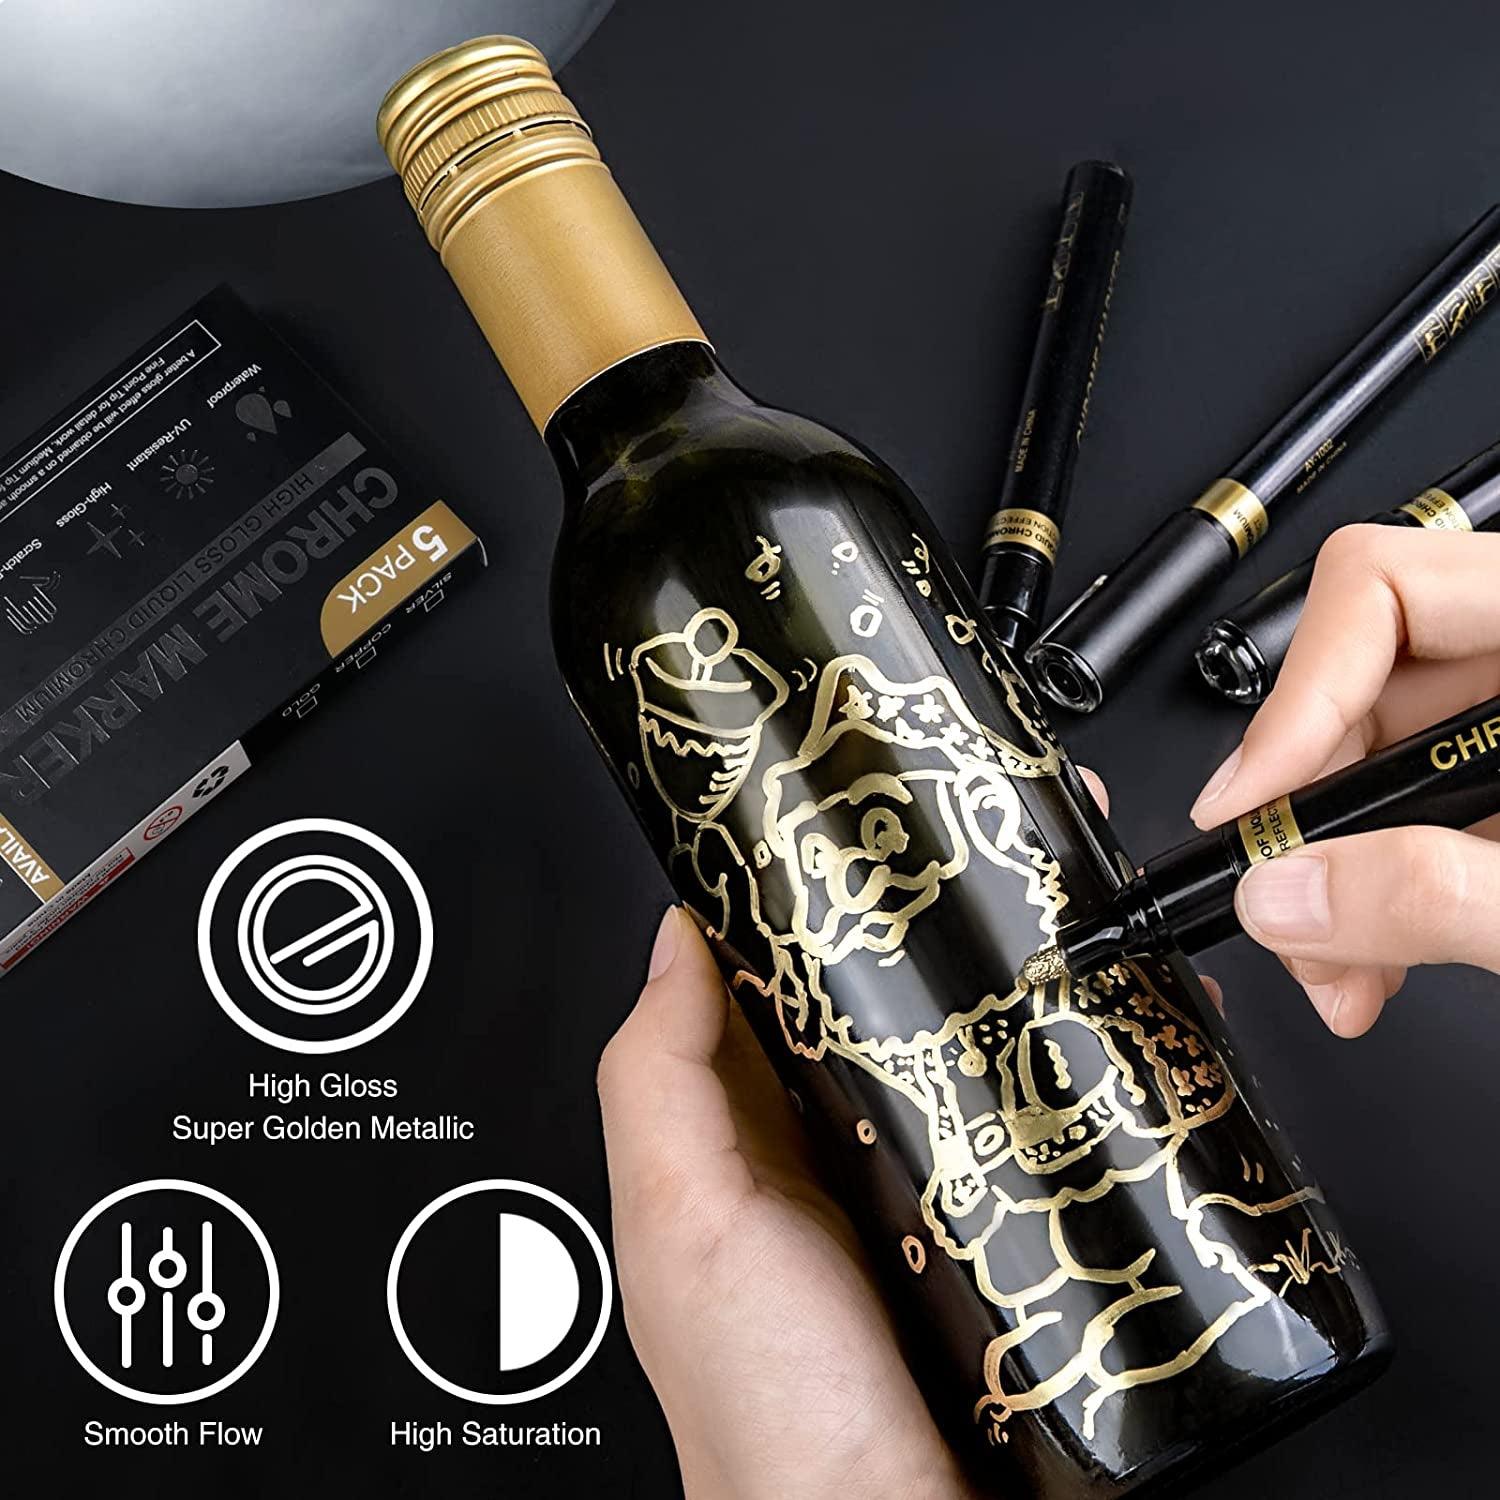 5x 1-3mm Art Liquid Gold Chrome Markers Reflective Gloss Metallic Set Golden Mirror Paint Pens - WoodArtSupply